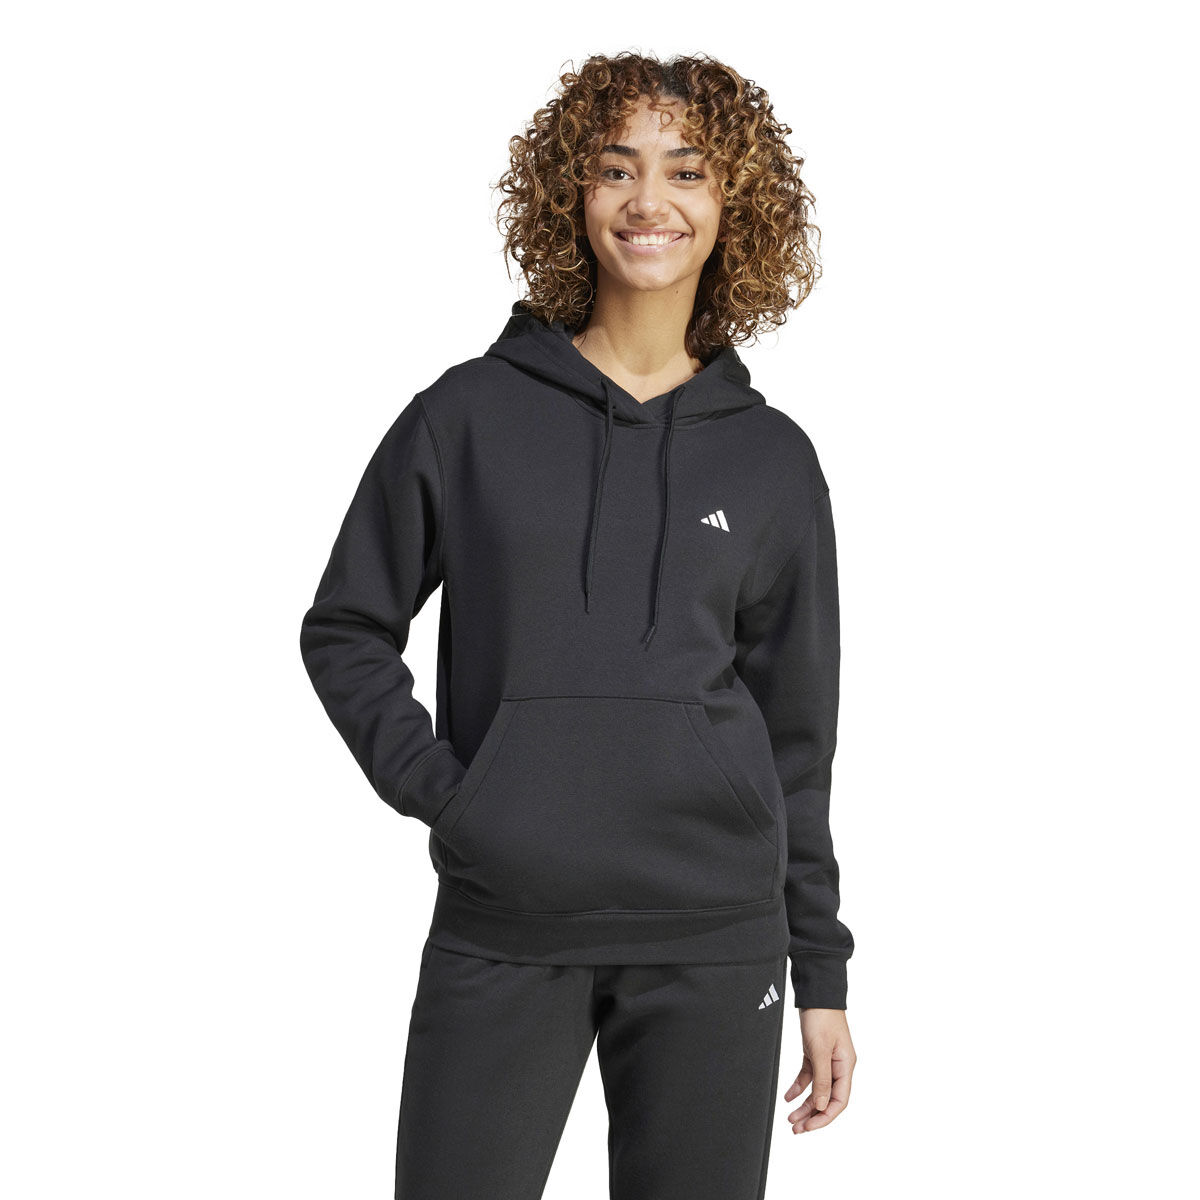 Adidas Womens Jacket Adult Medium Black Climacool Training Windbreaker  Ladies | eBay